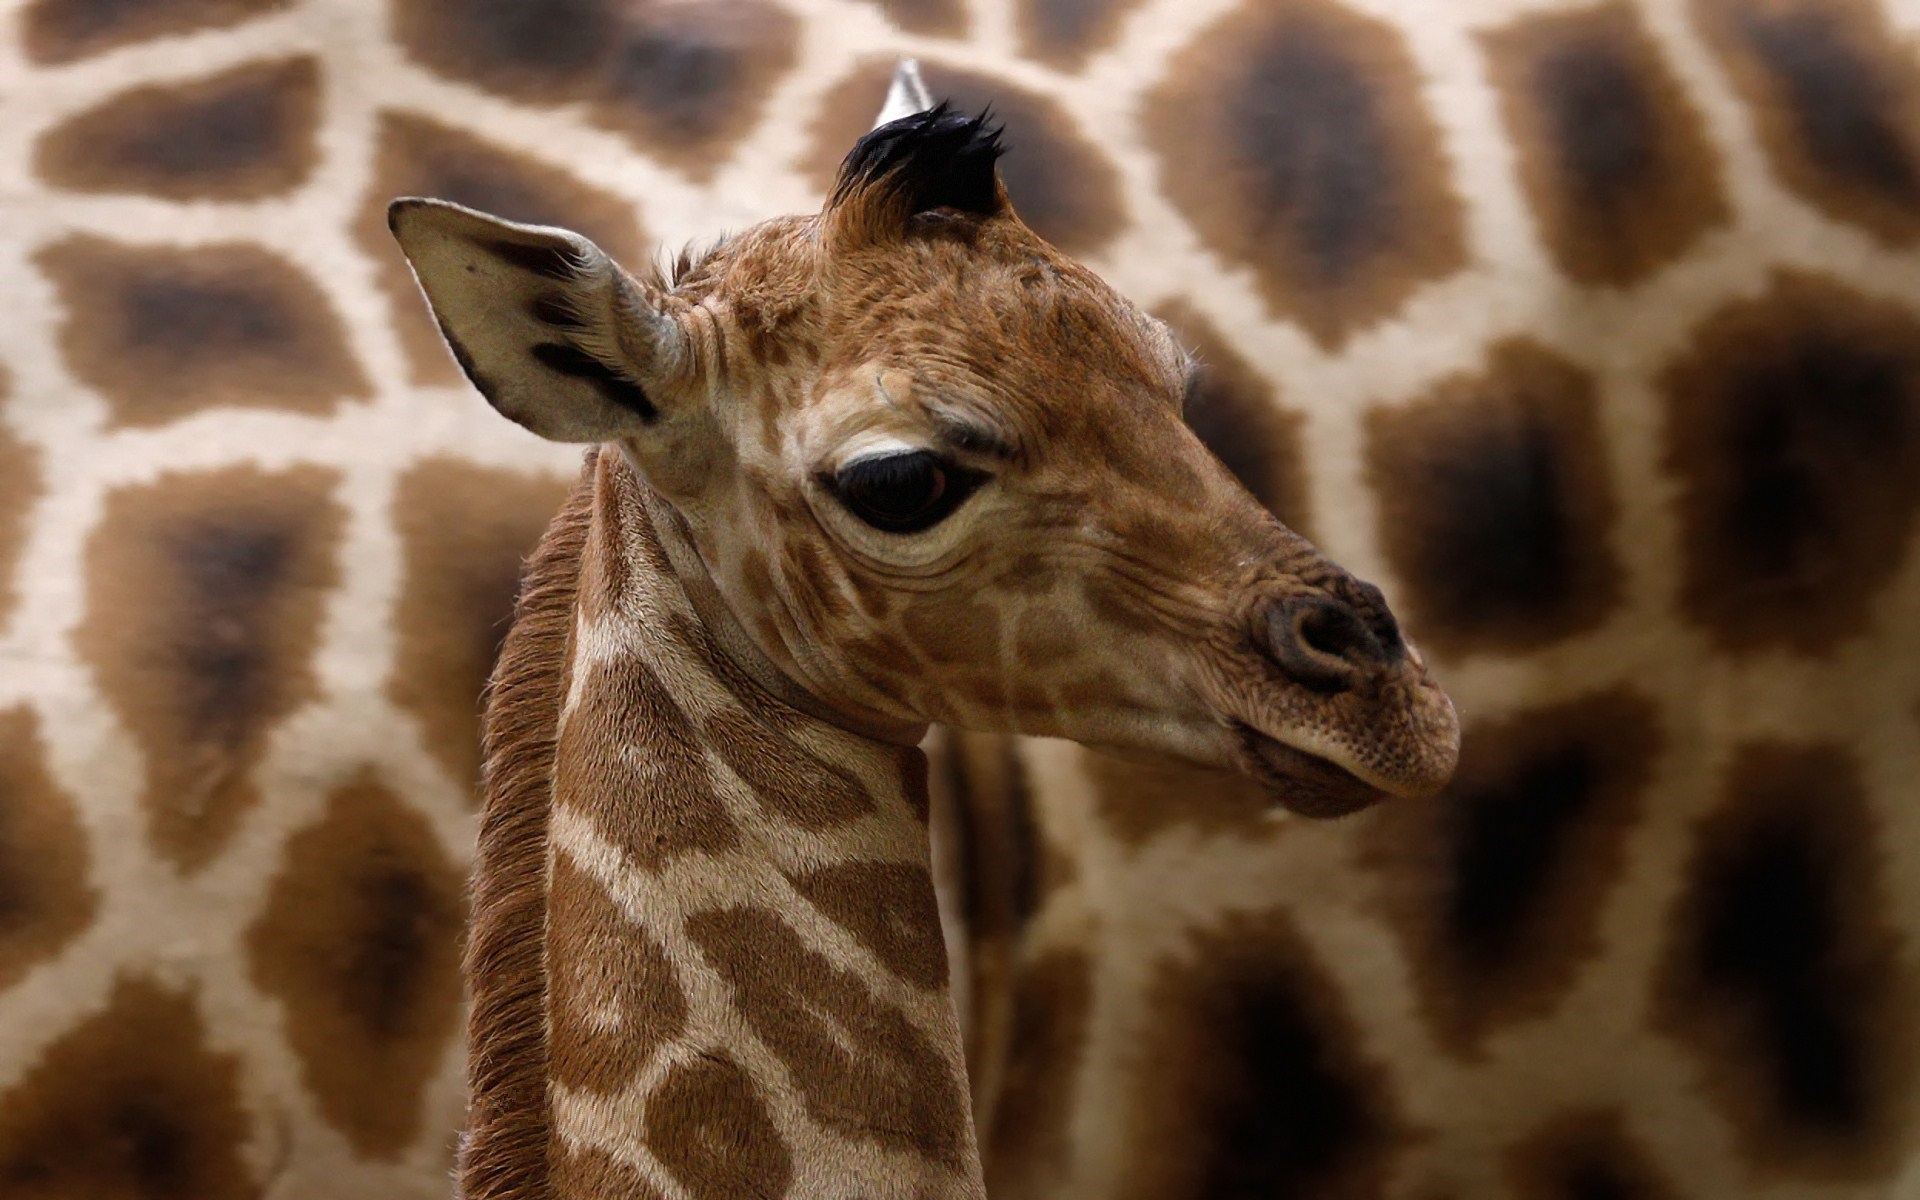 giraffe baby images